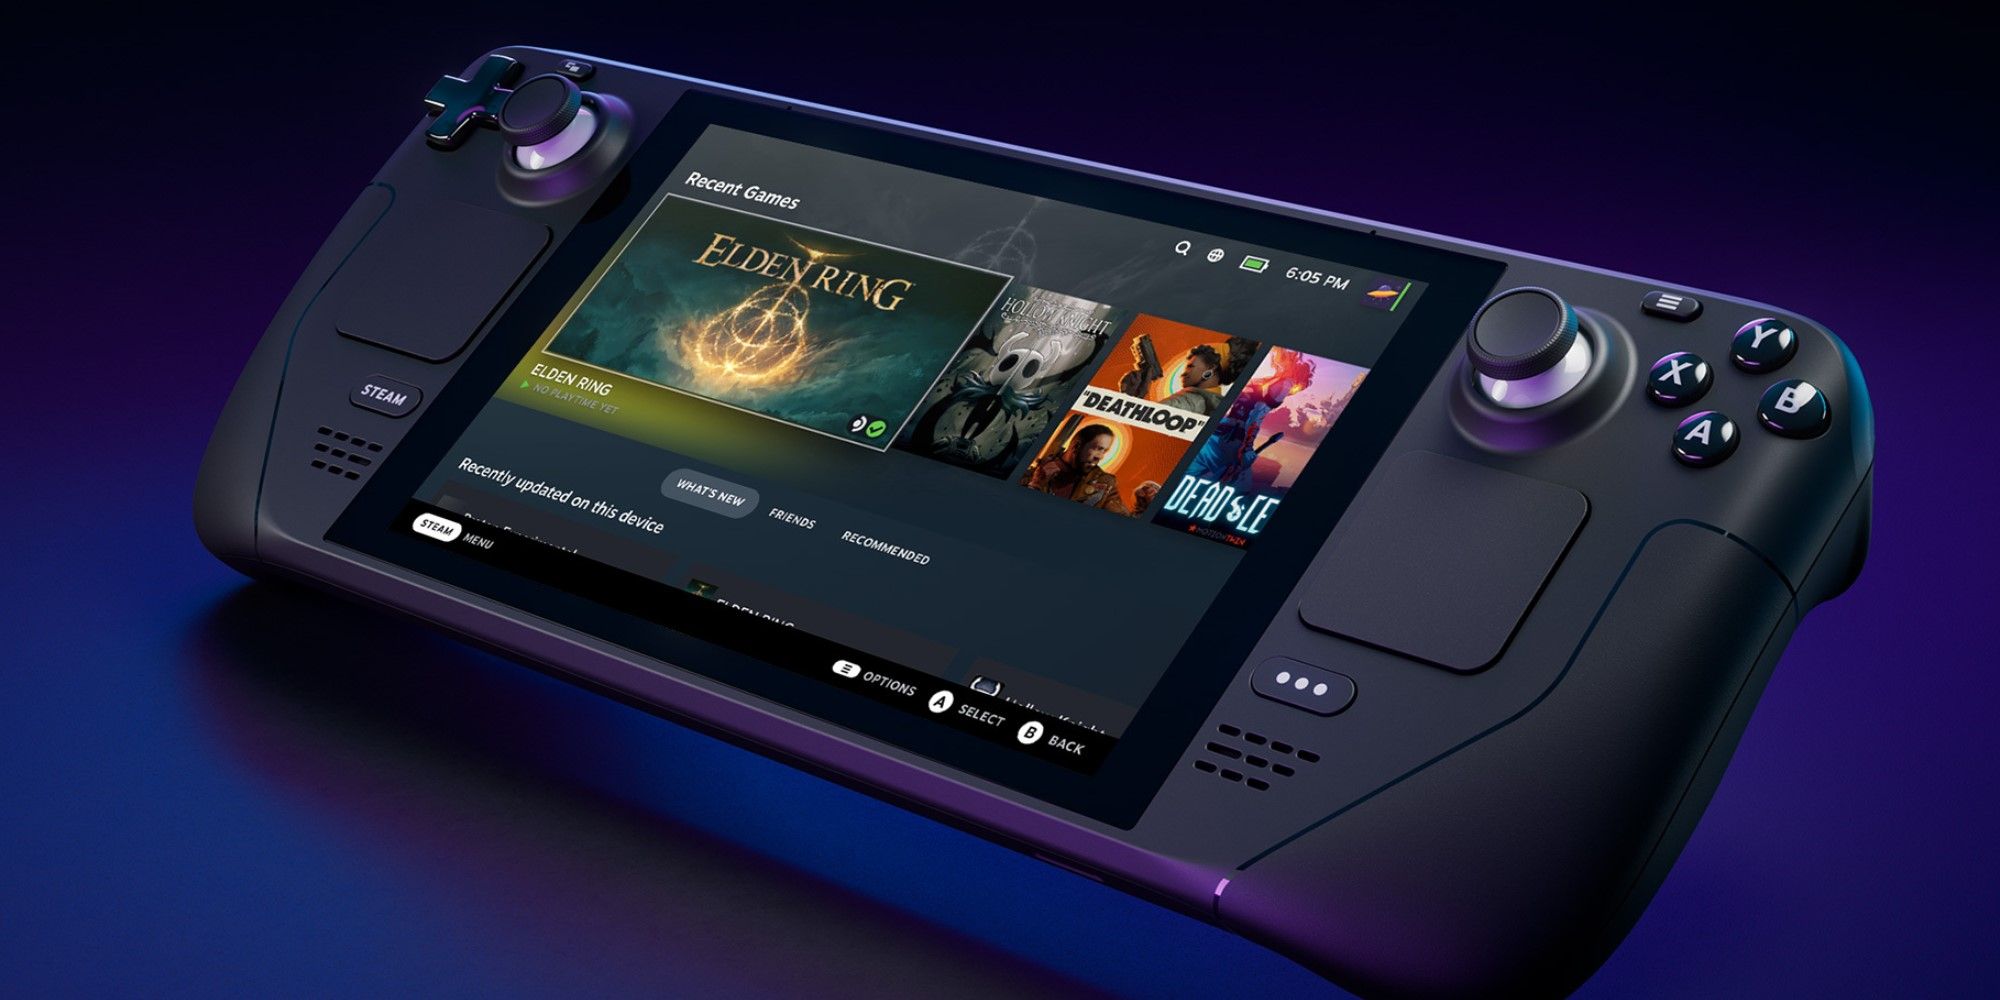 Steam Deck recebe Joystick de Ouro por melhor hardware para jogos de 2022 -  Notícias - Diolinux Plus